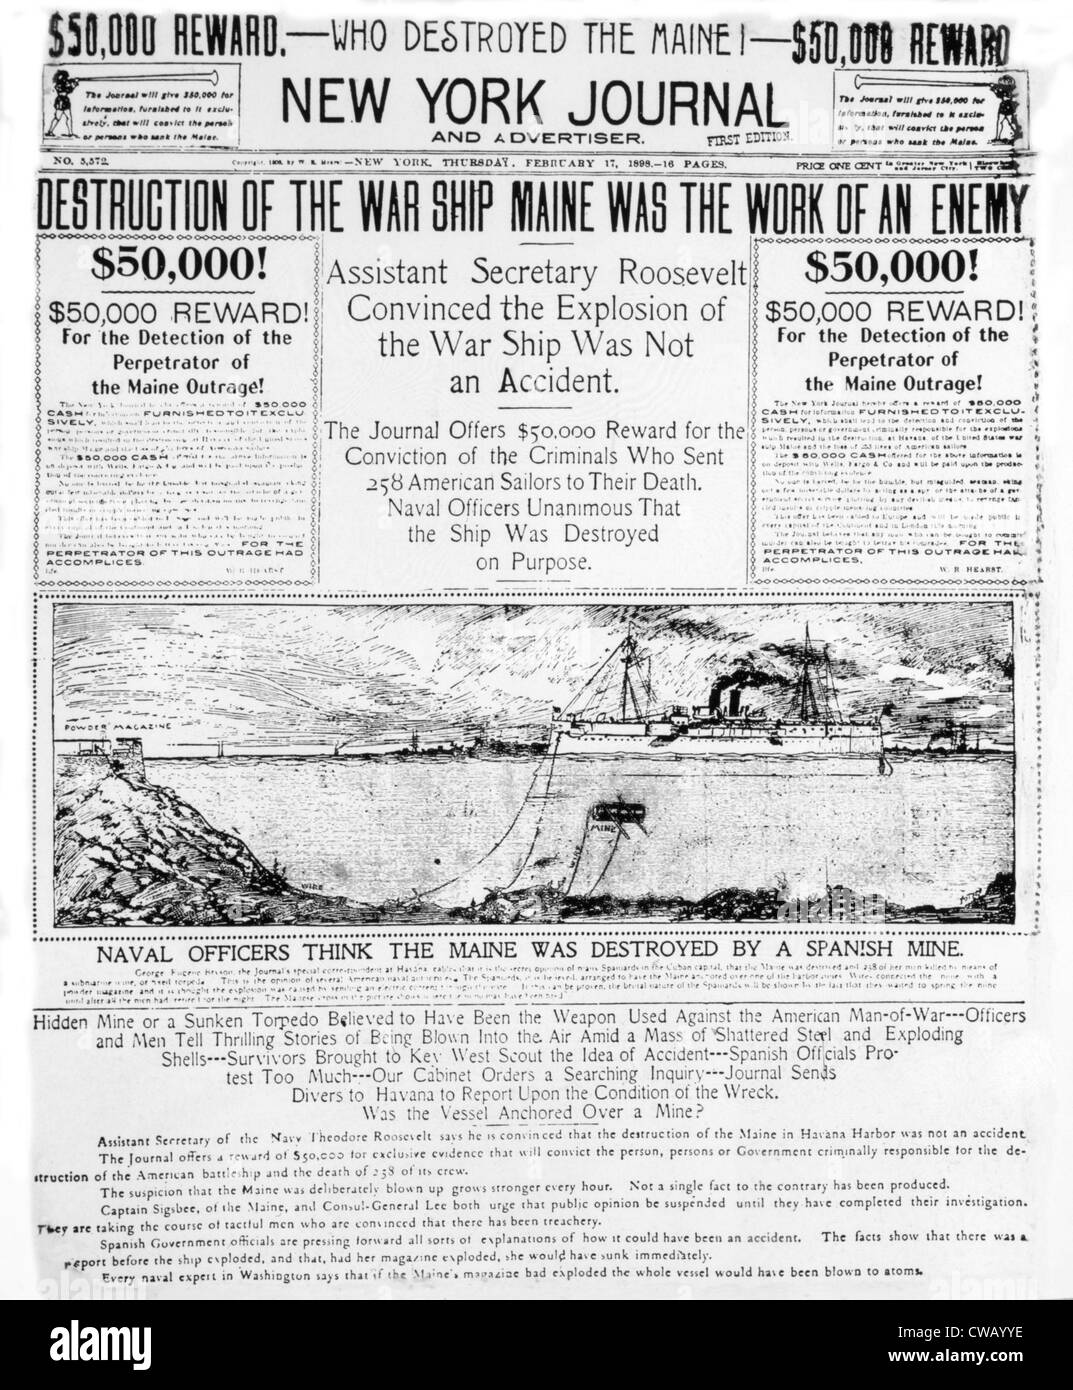 Die Zerstörung des Krieges Schiff Maine wie berichtet in der New York Journal, 17. Februar 1898 Stockfoto